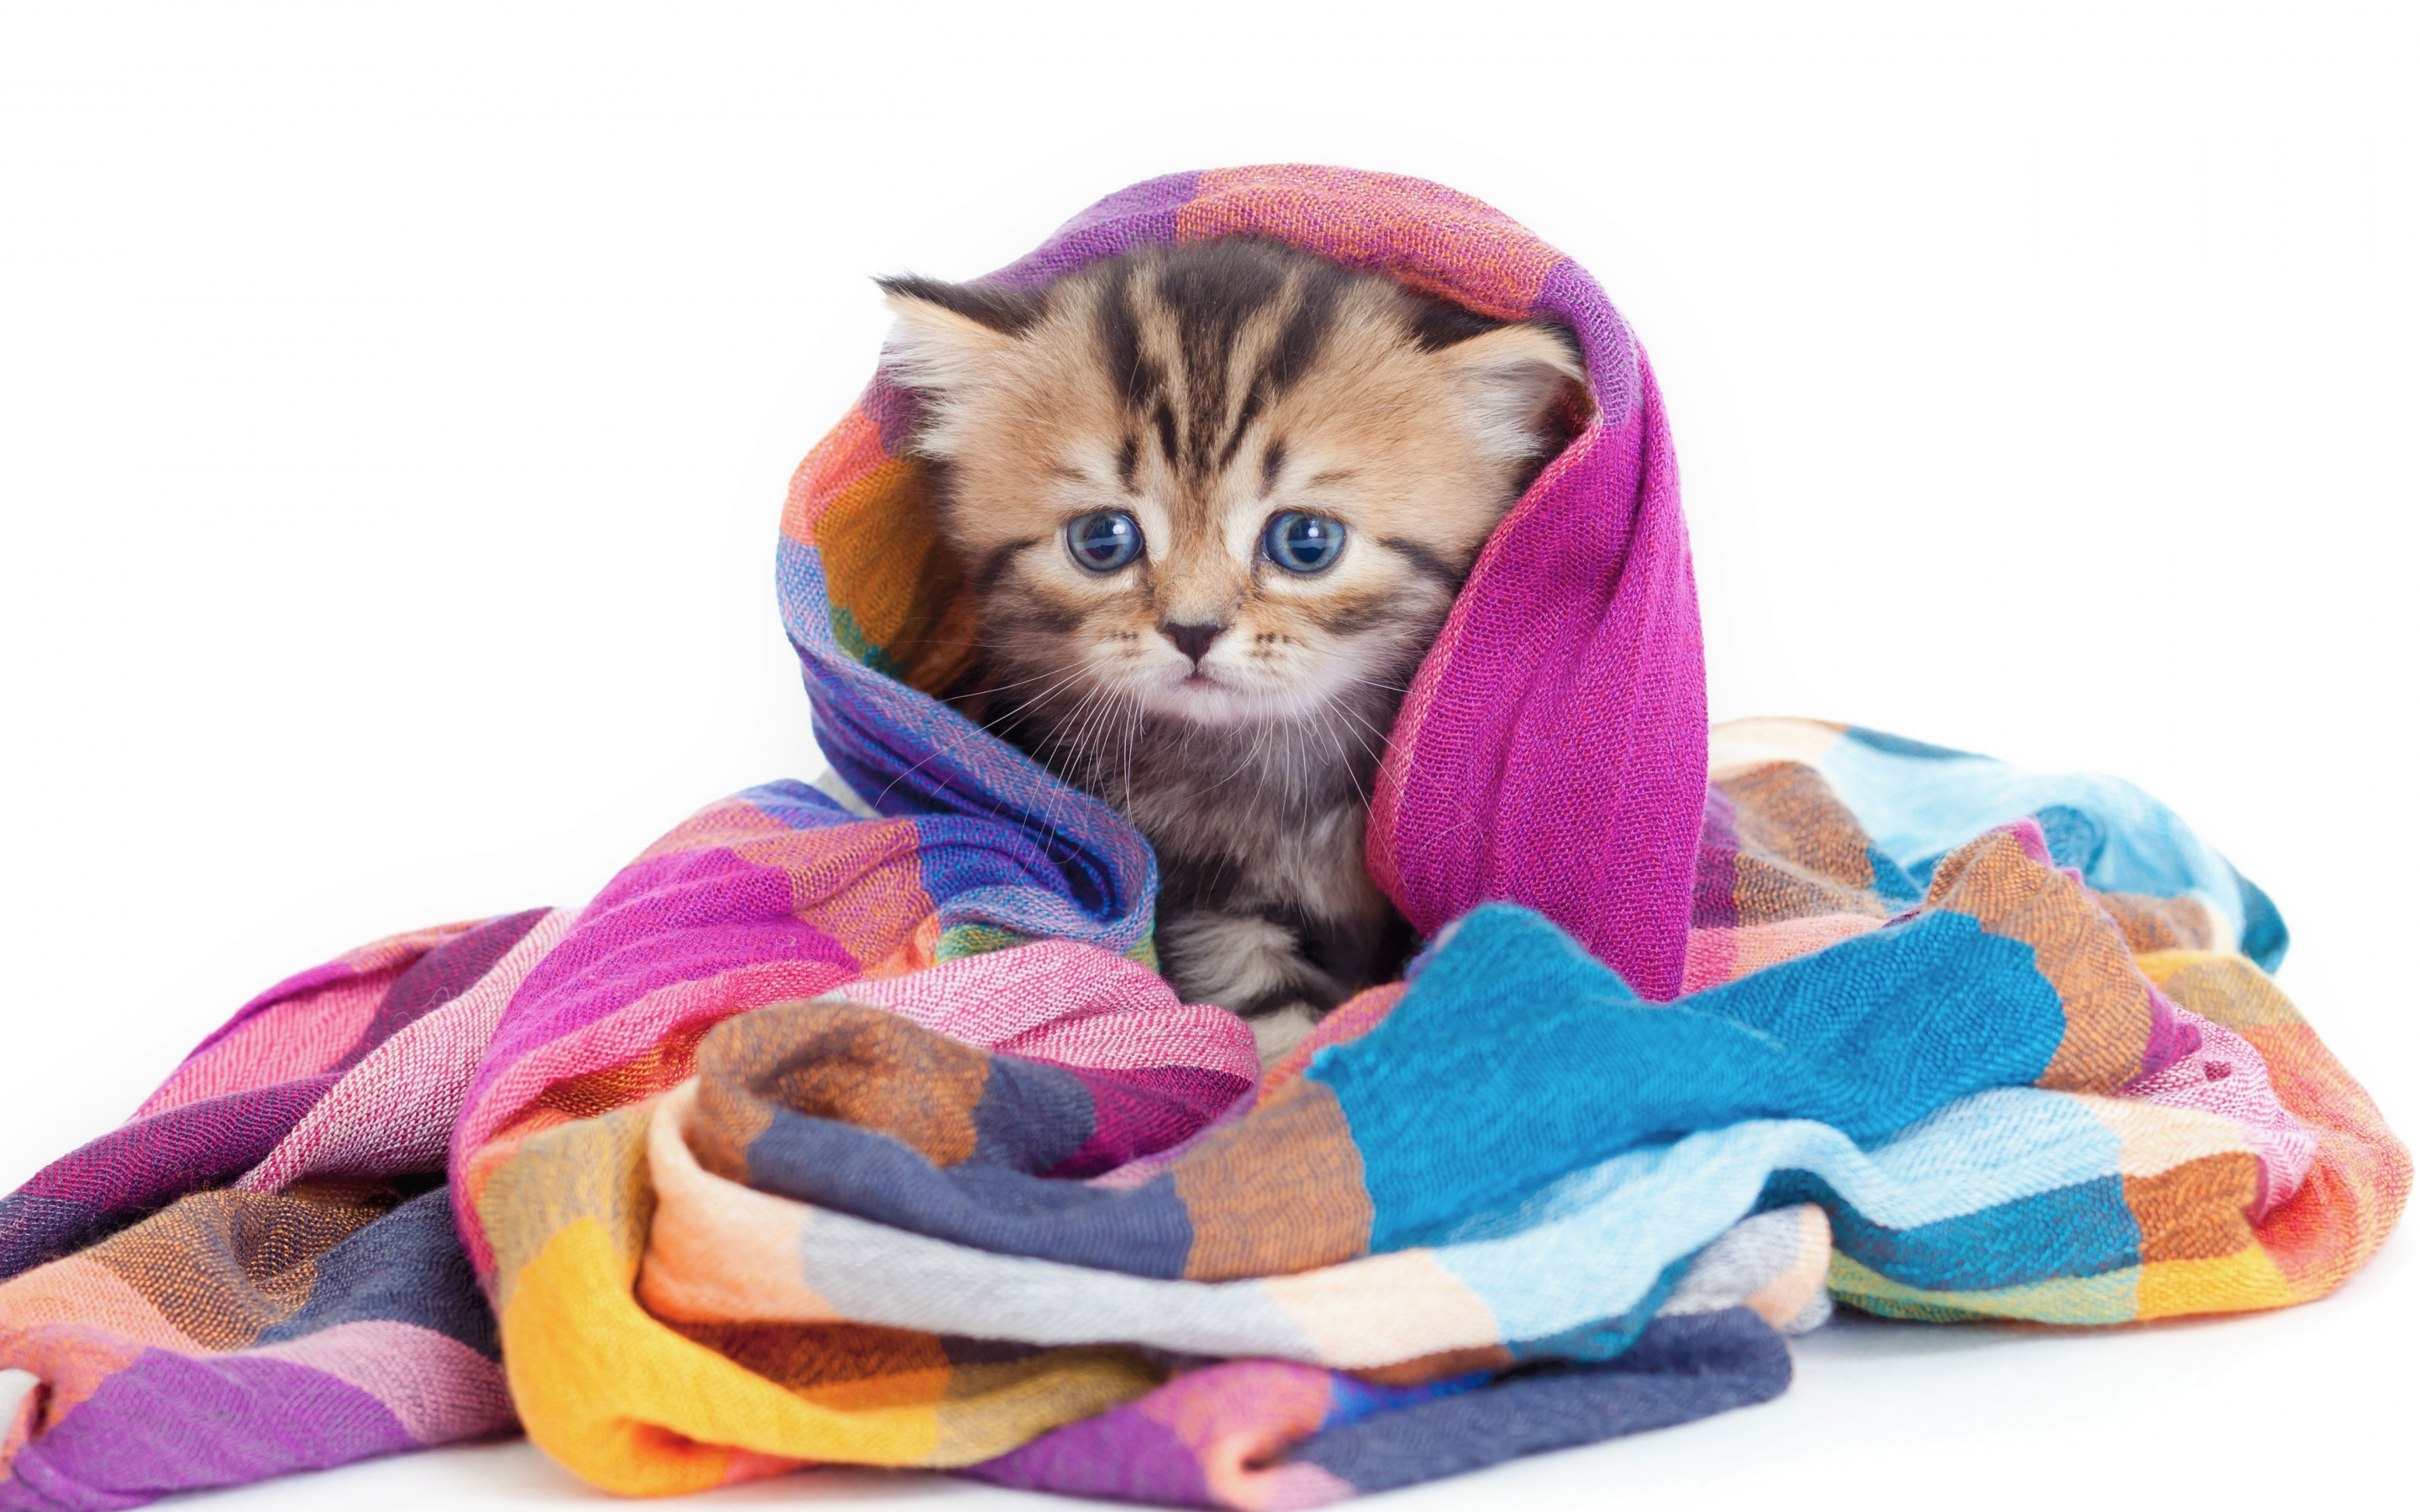 Cute, animal, feline wrap in blanket, 2880x1800 wallpaper